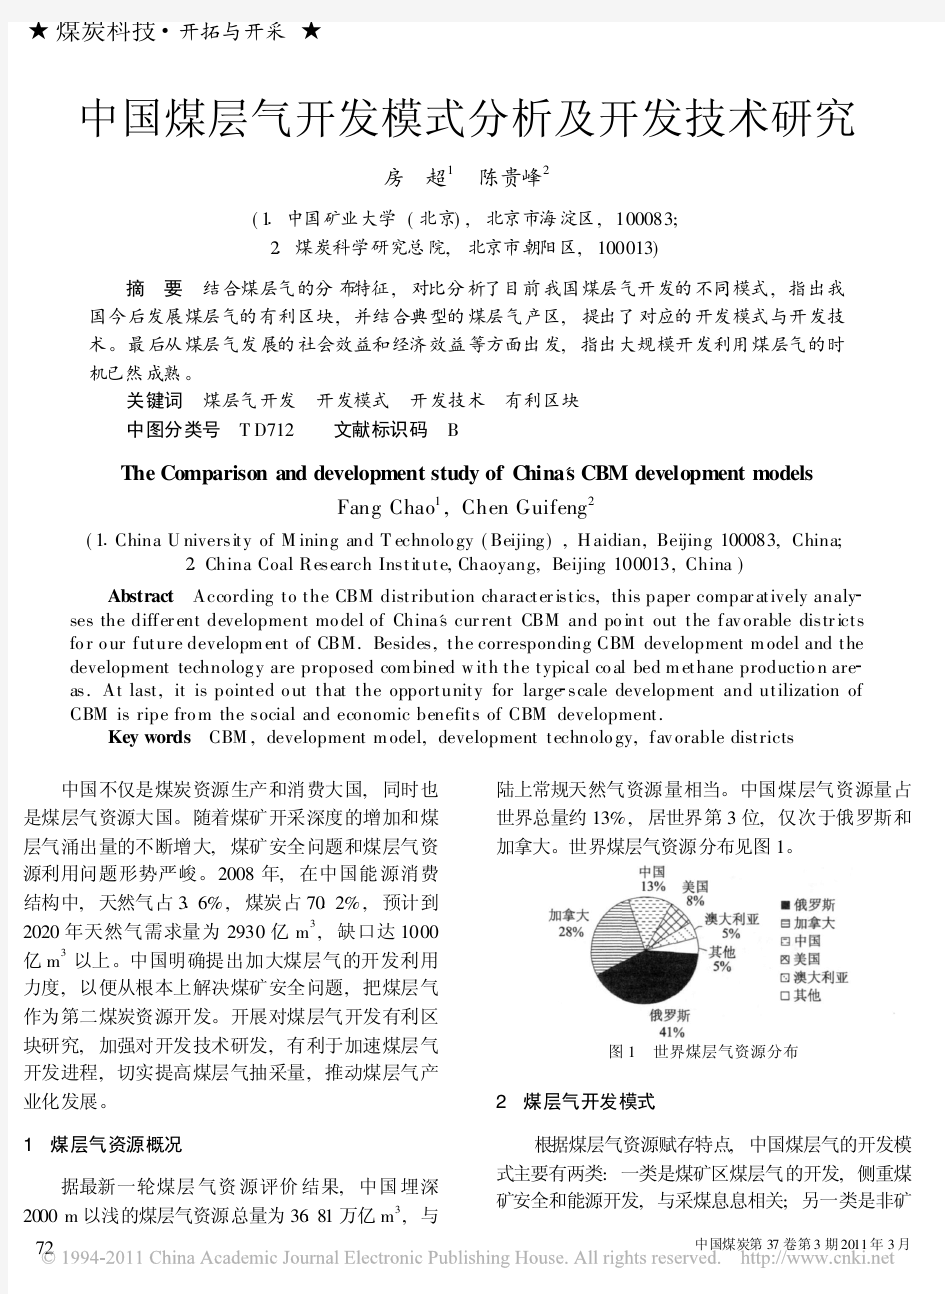 中国煤层气开发模式分析及开发技术研究